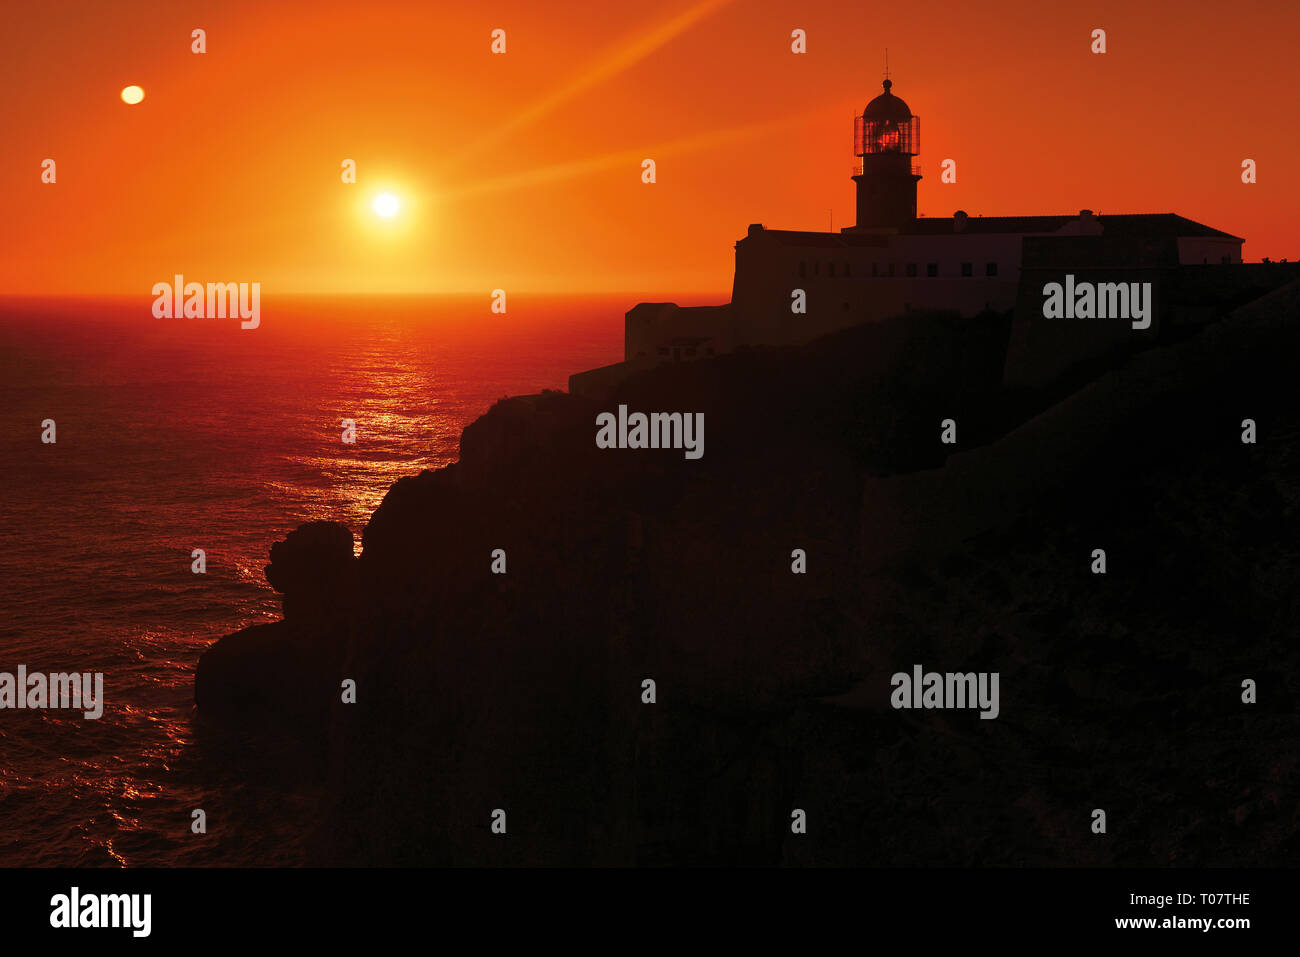 Romántica puesta de sol en la costa rocosa con faro Foto de stock